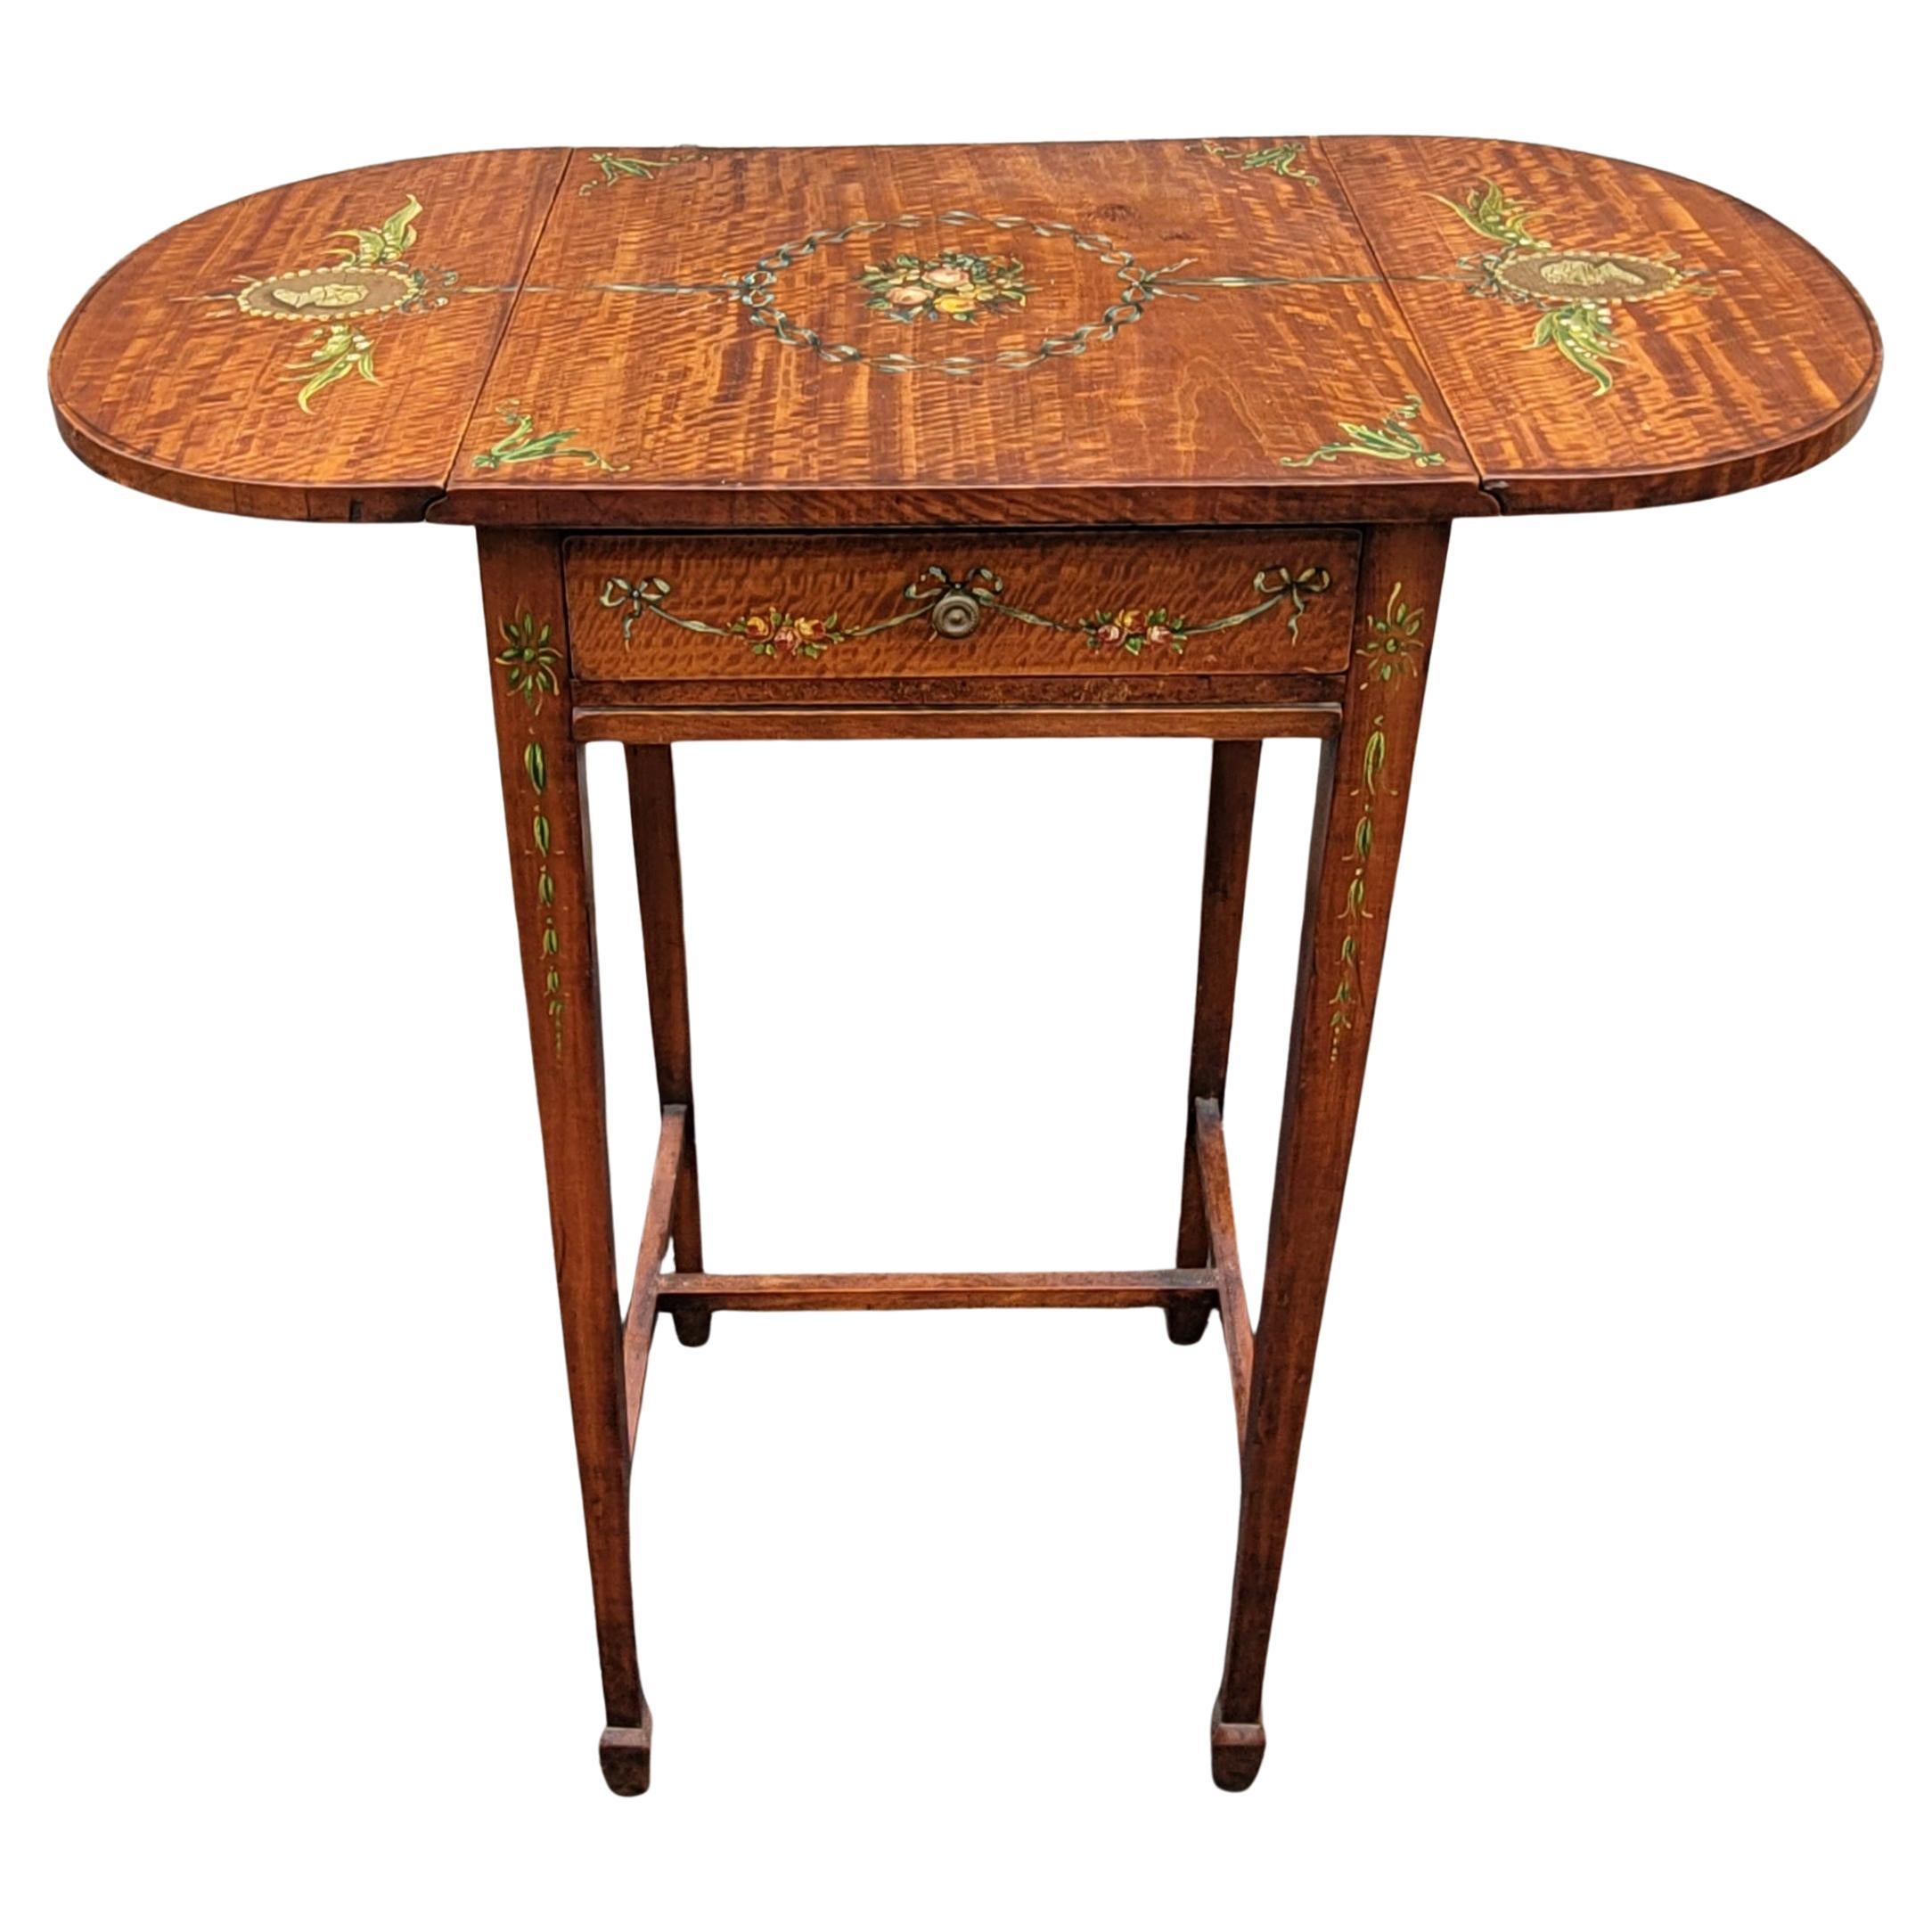 Incroyablement  Refinished  Table Pembroke en forme de goutte d'eau des années 1930 avec un travail de peinture à la main très habile et magnifique. Il fera briller n'importe quelle pièce.
Mesure 26 